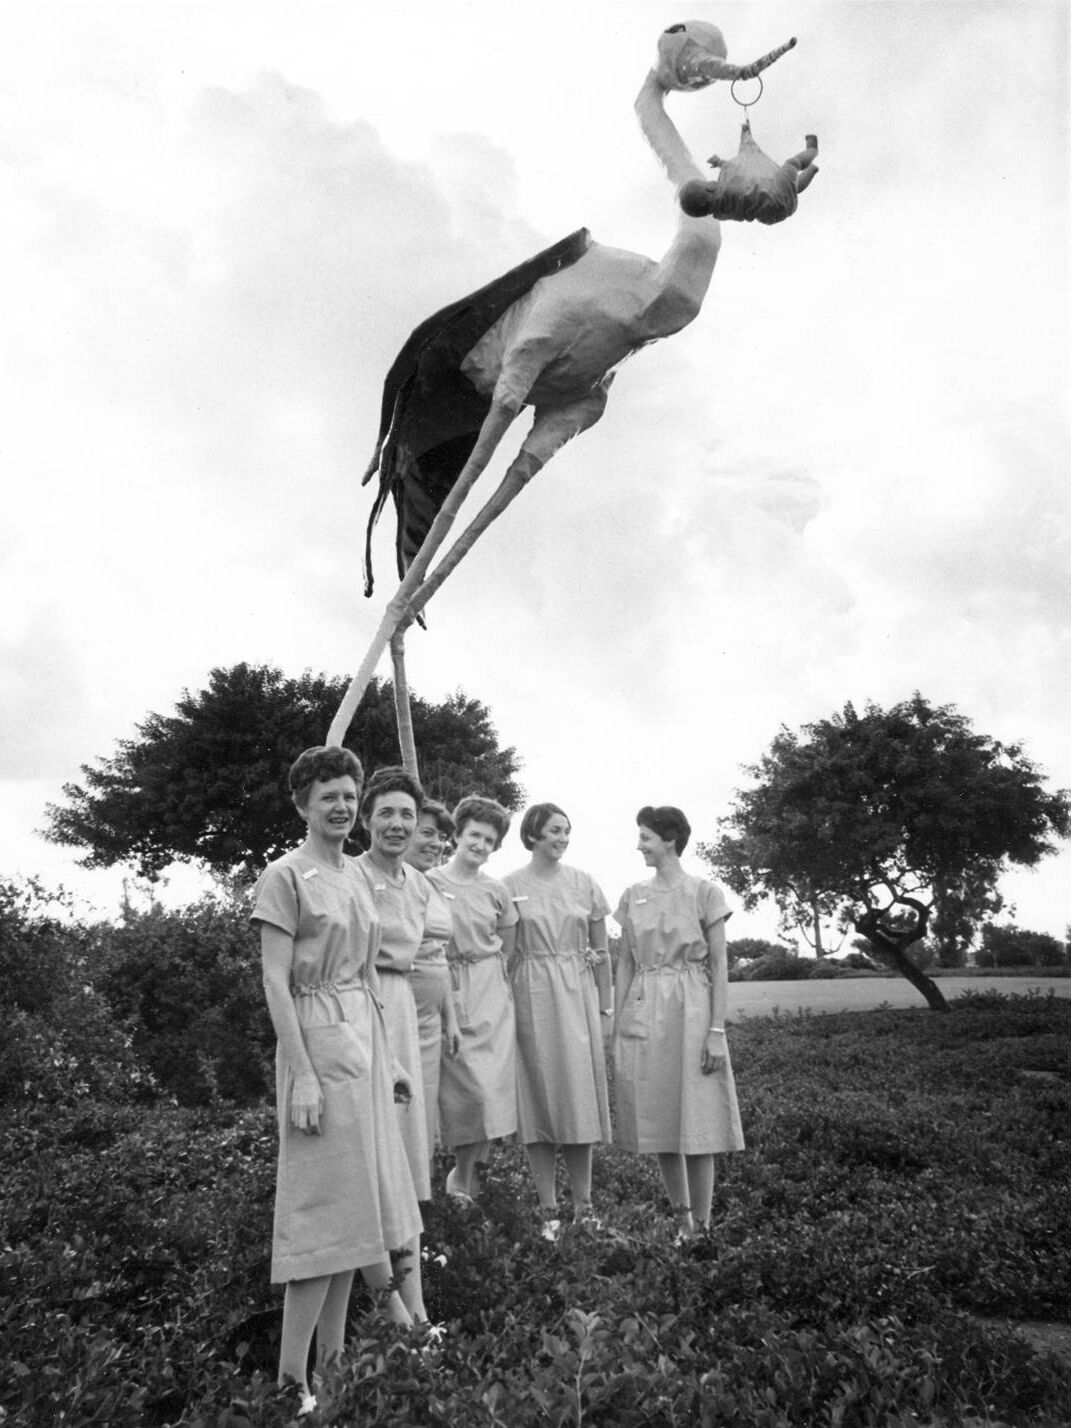 Object of Interest / Sharp Stork 1967